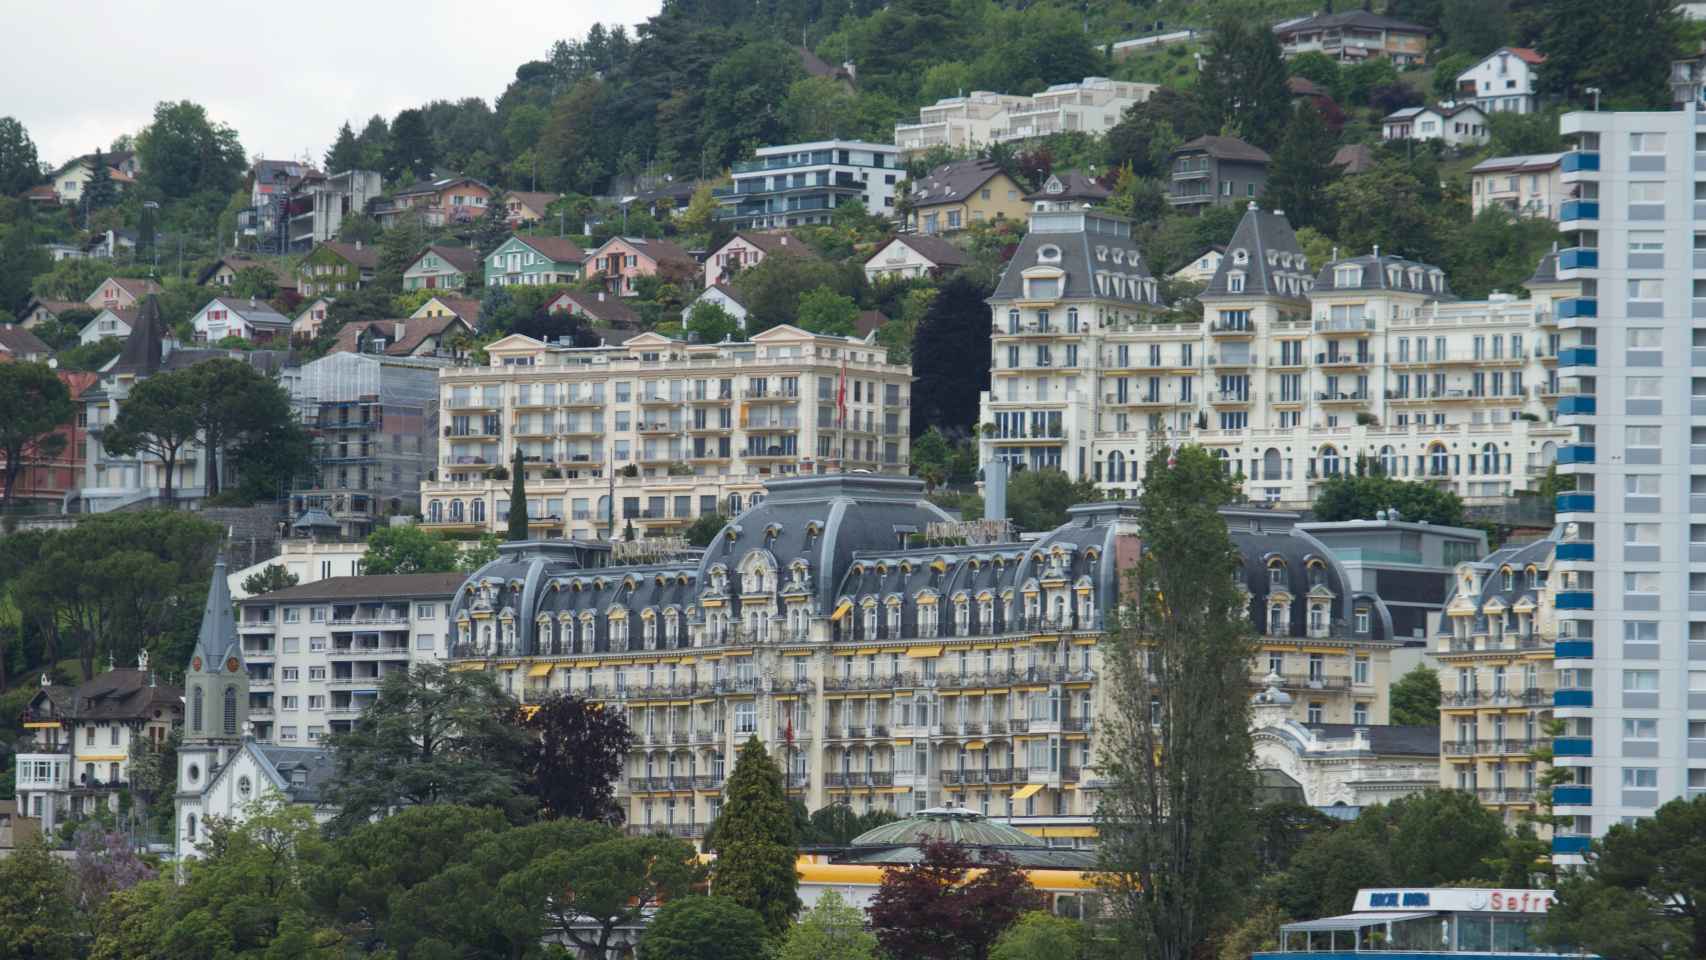 Otra imagen del hotel suizo donde se desarrolla Bilderberg este año.